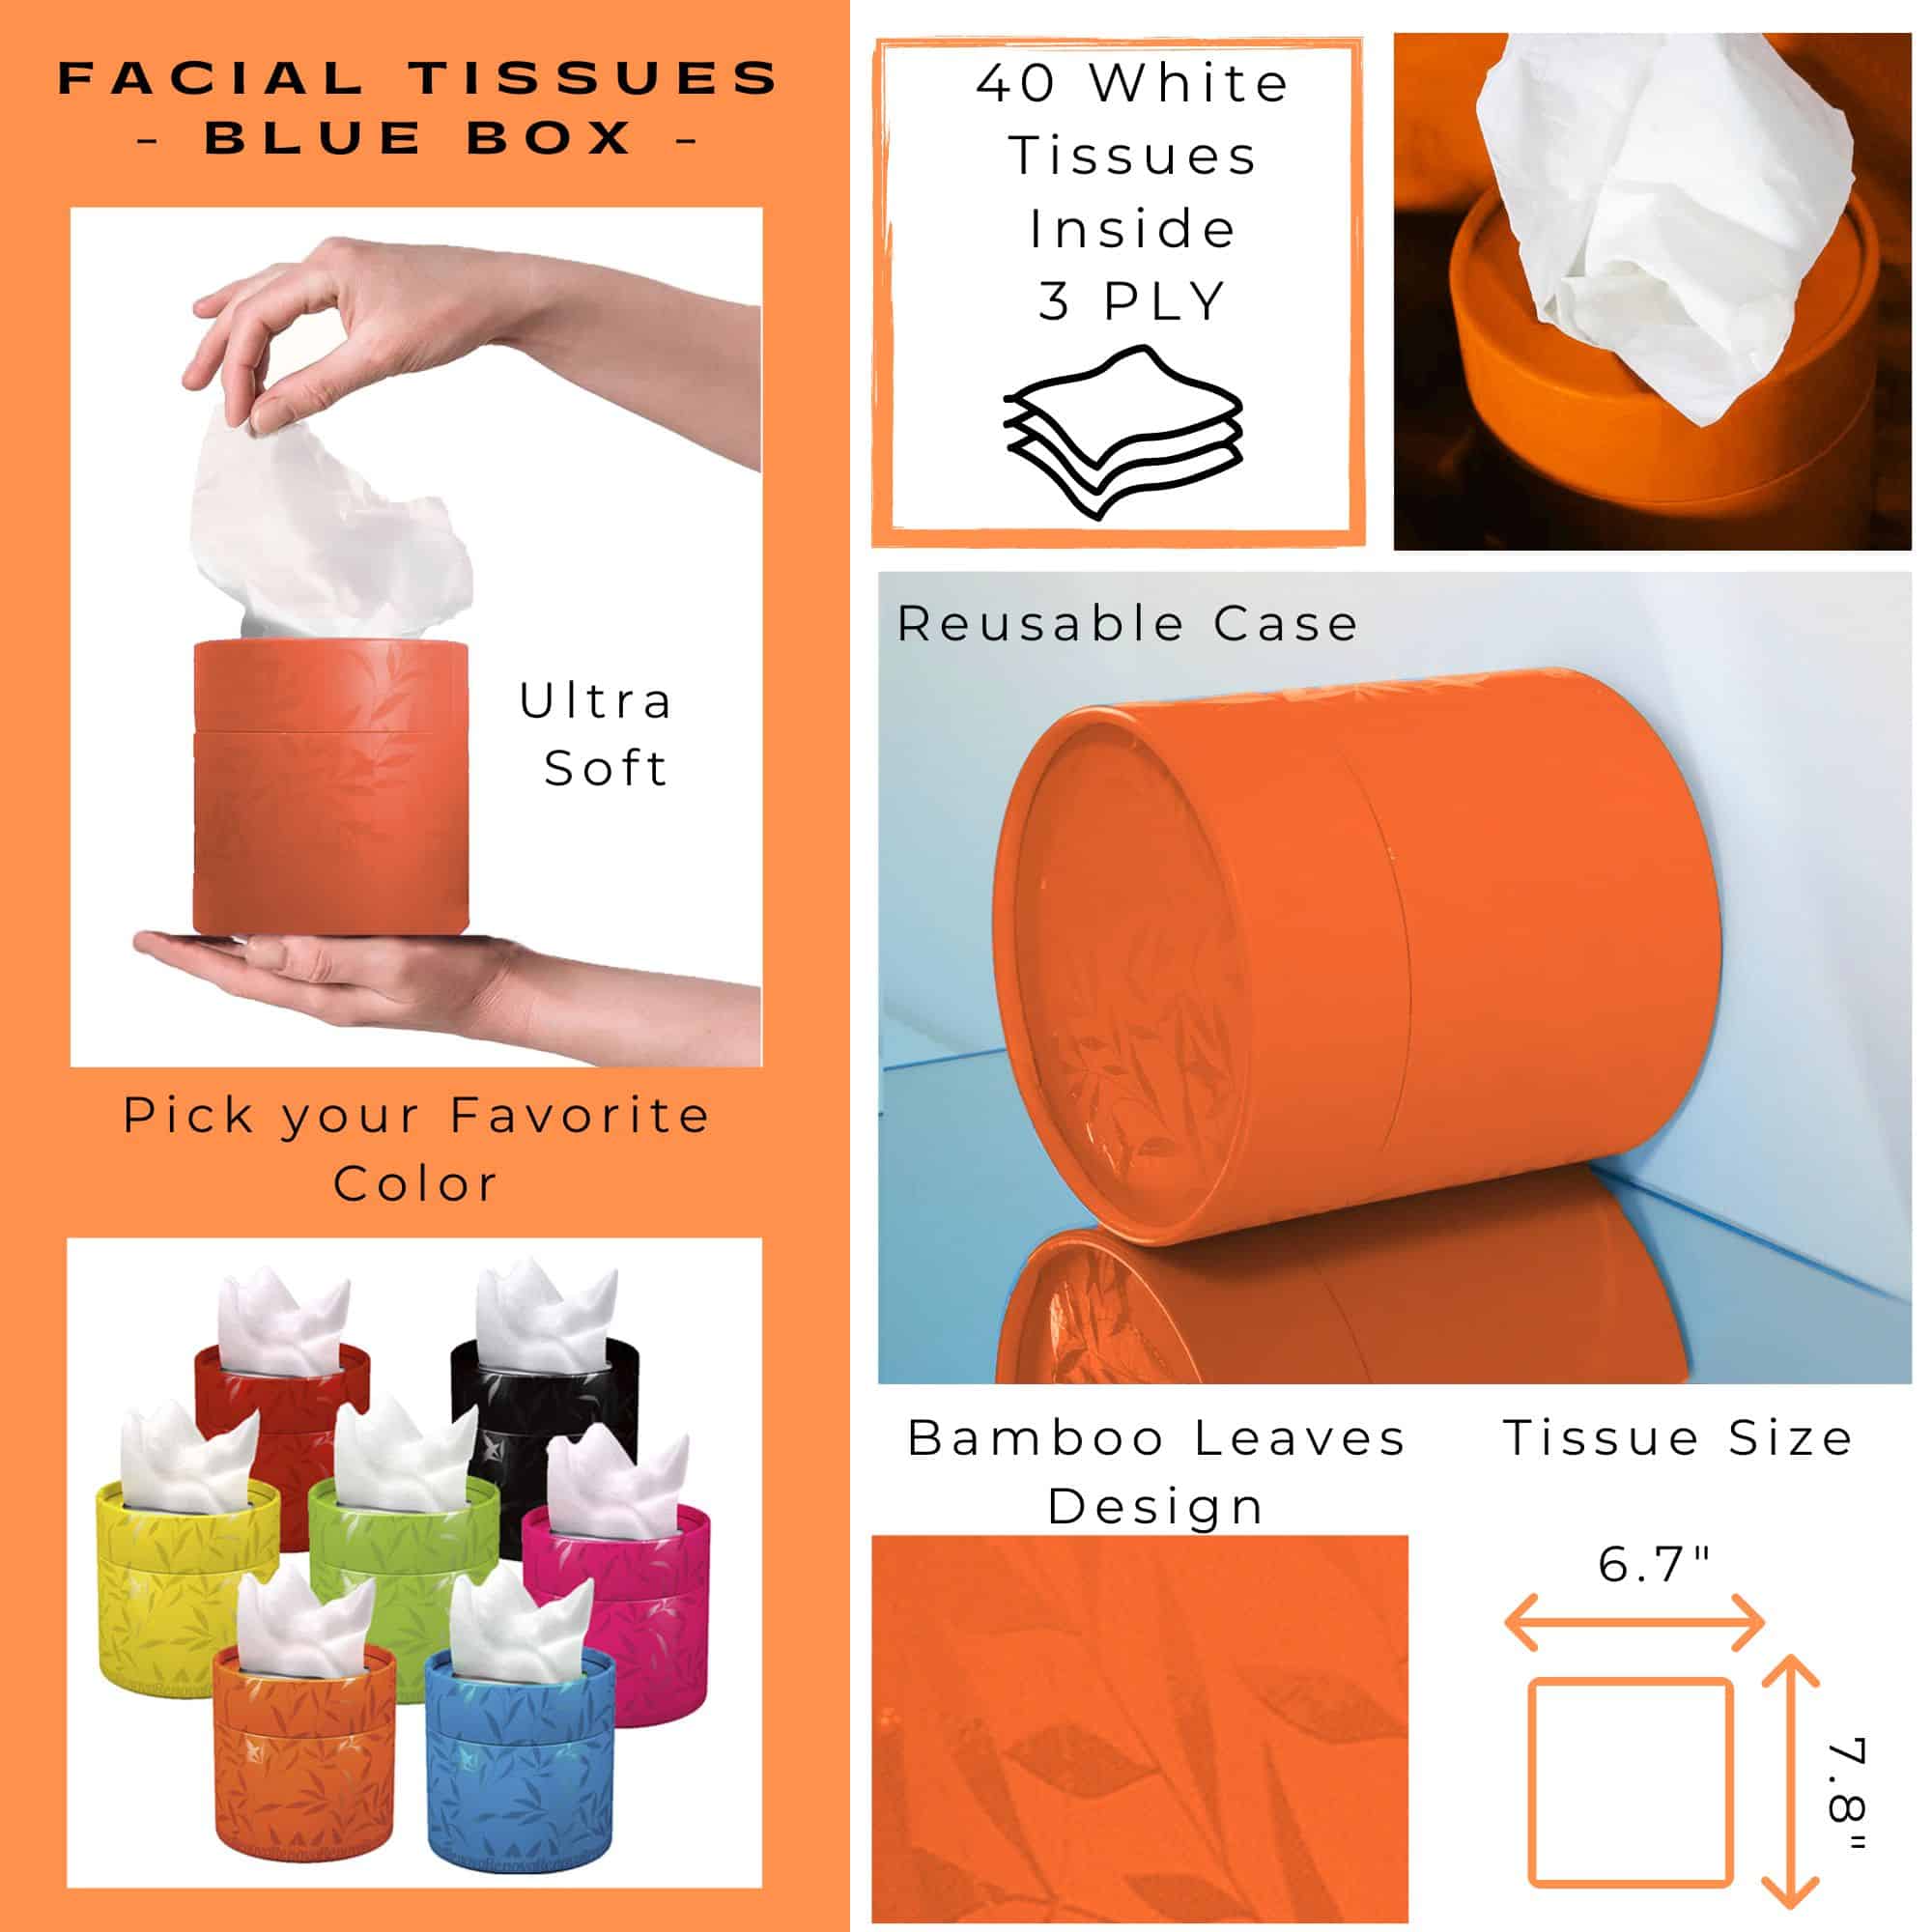 Facial Tissue Round Orange Box, Renova